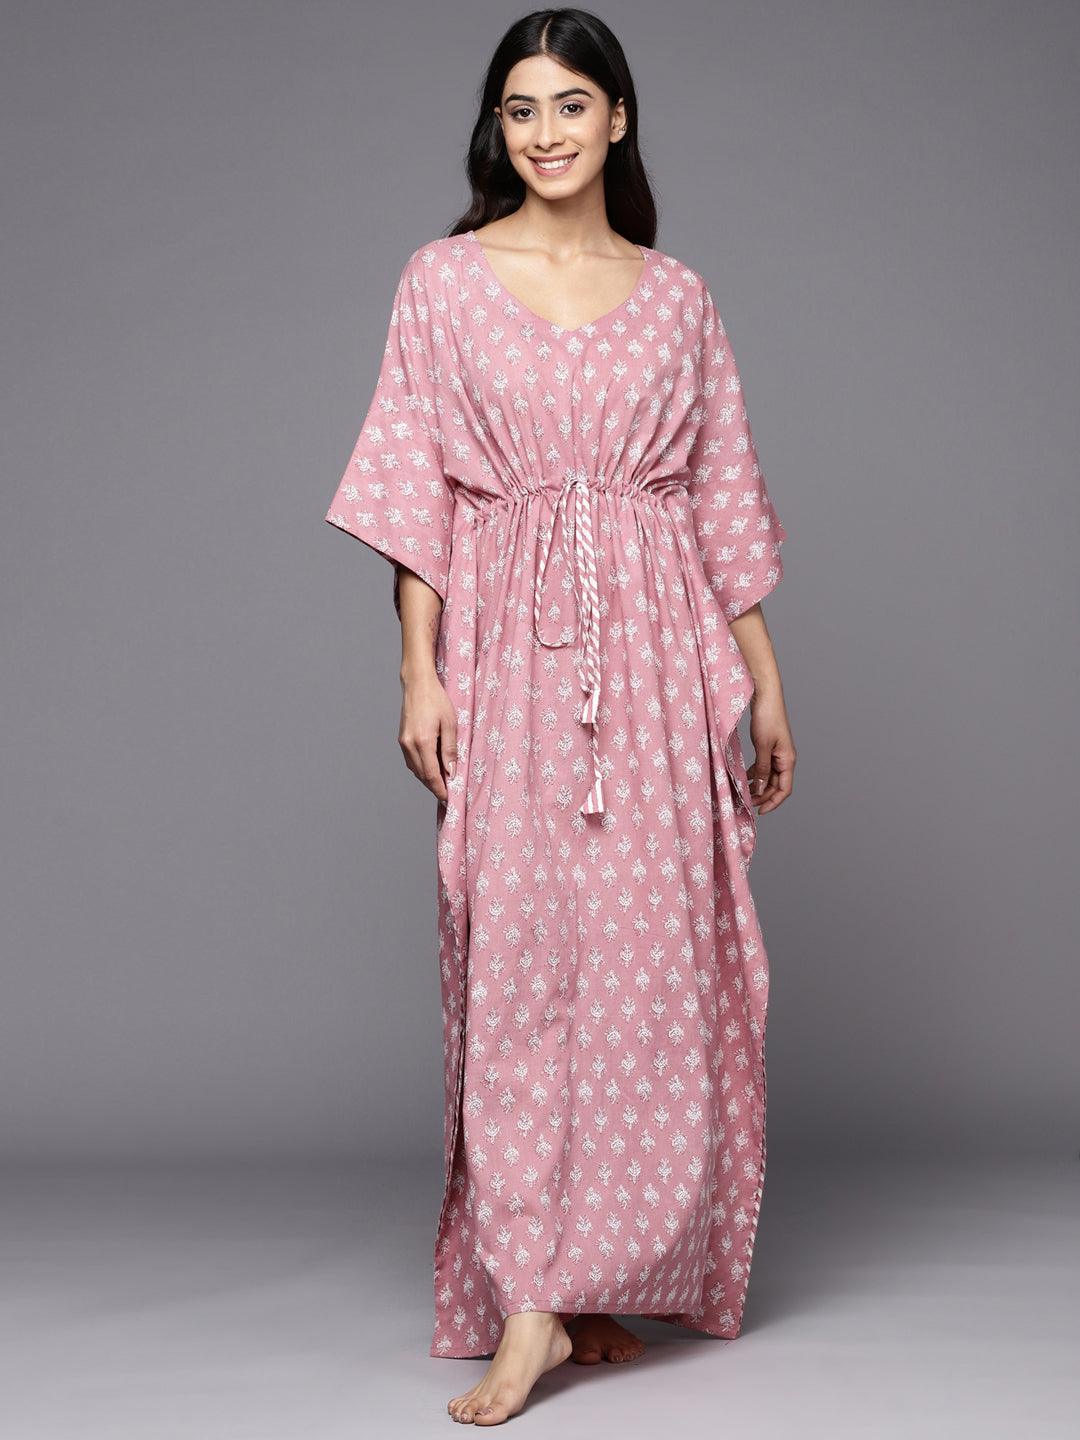 Cotton Ladies Short Night Dress, Pattern : Printed, Size : M at Rs 220 /  Piece in Mumbai